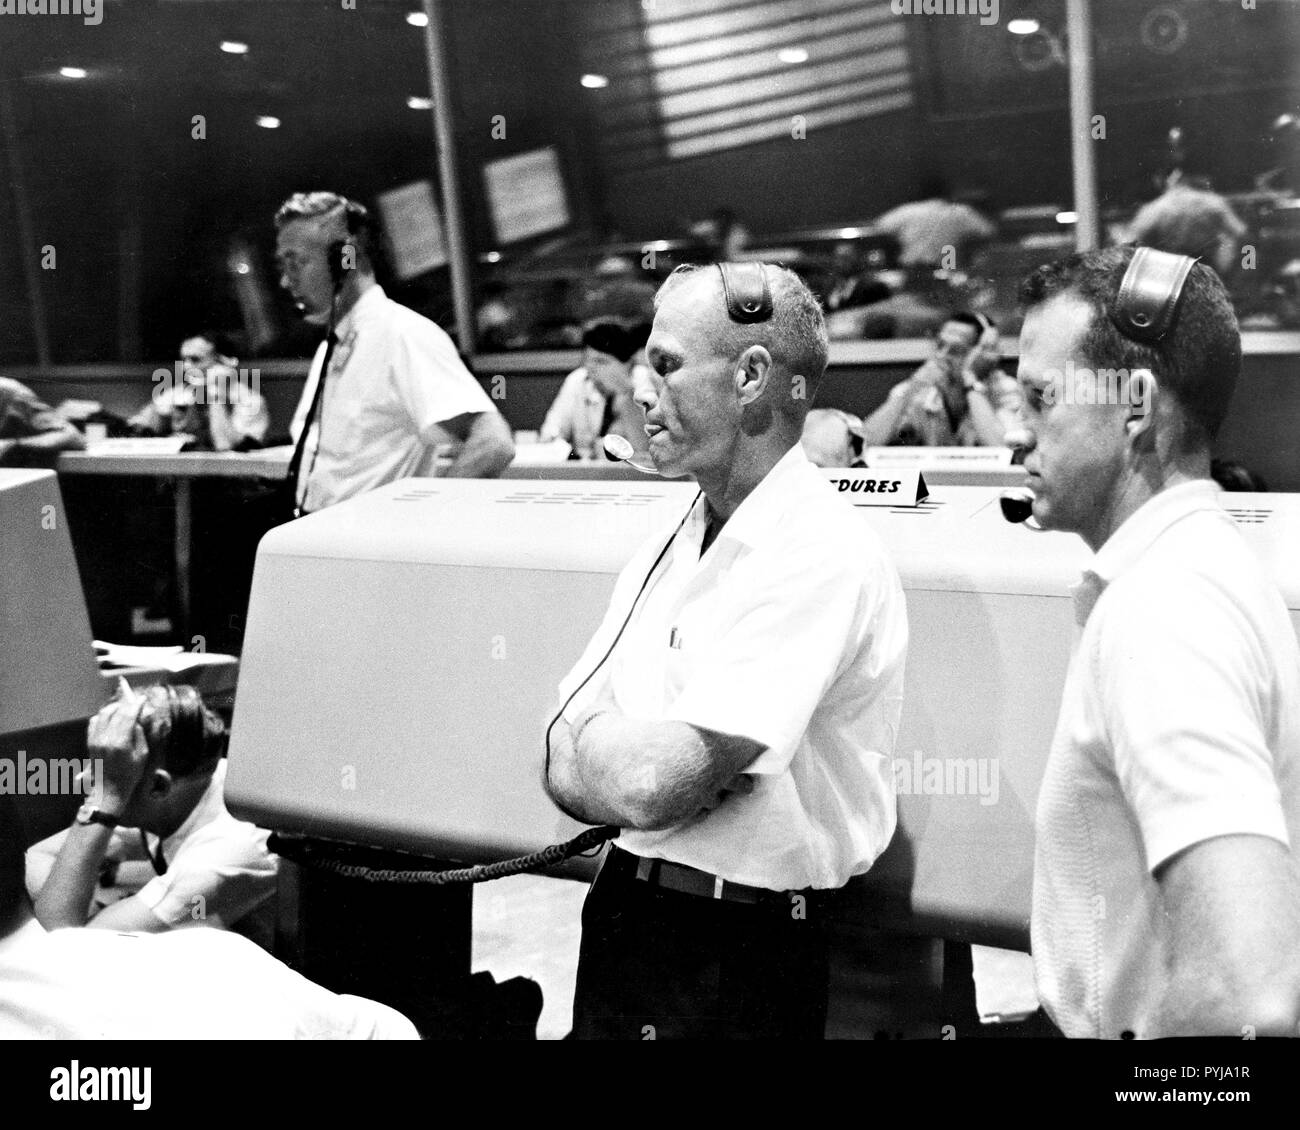 (21 luglio 1961) --- Vista del Mission Control Center di Cape Canaveral durante il Mercury-Redstone 4 (MR-4) missione. Gli astronauti John Glenn (sinistra) e L. Gordon Cooper (destra) agiscono come veicoli spaziali comunicatori (CAPCOM). Foto Stock